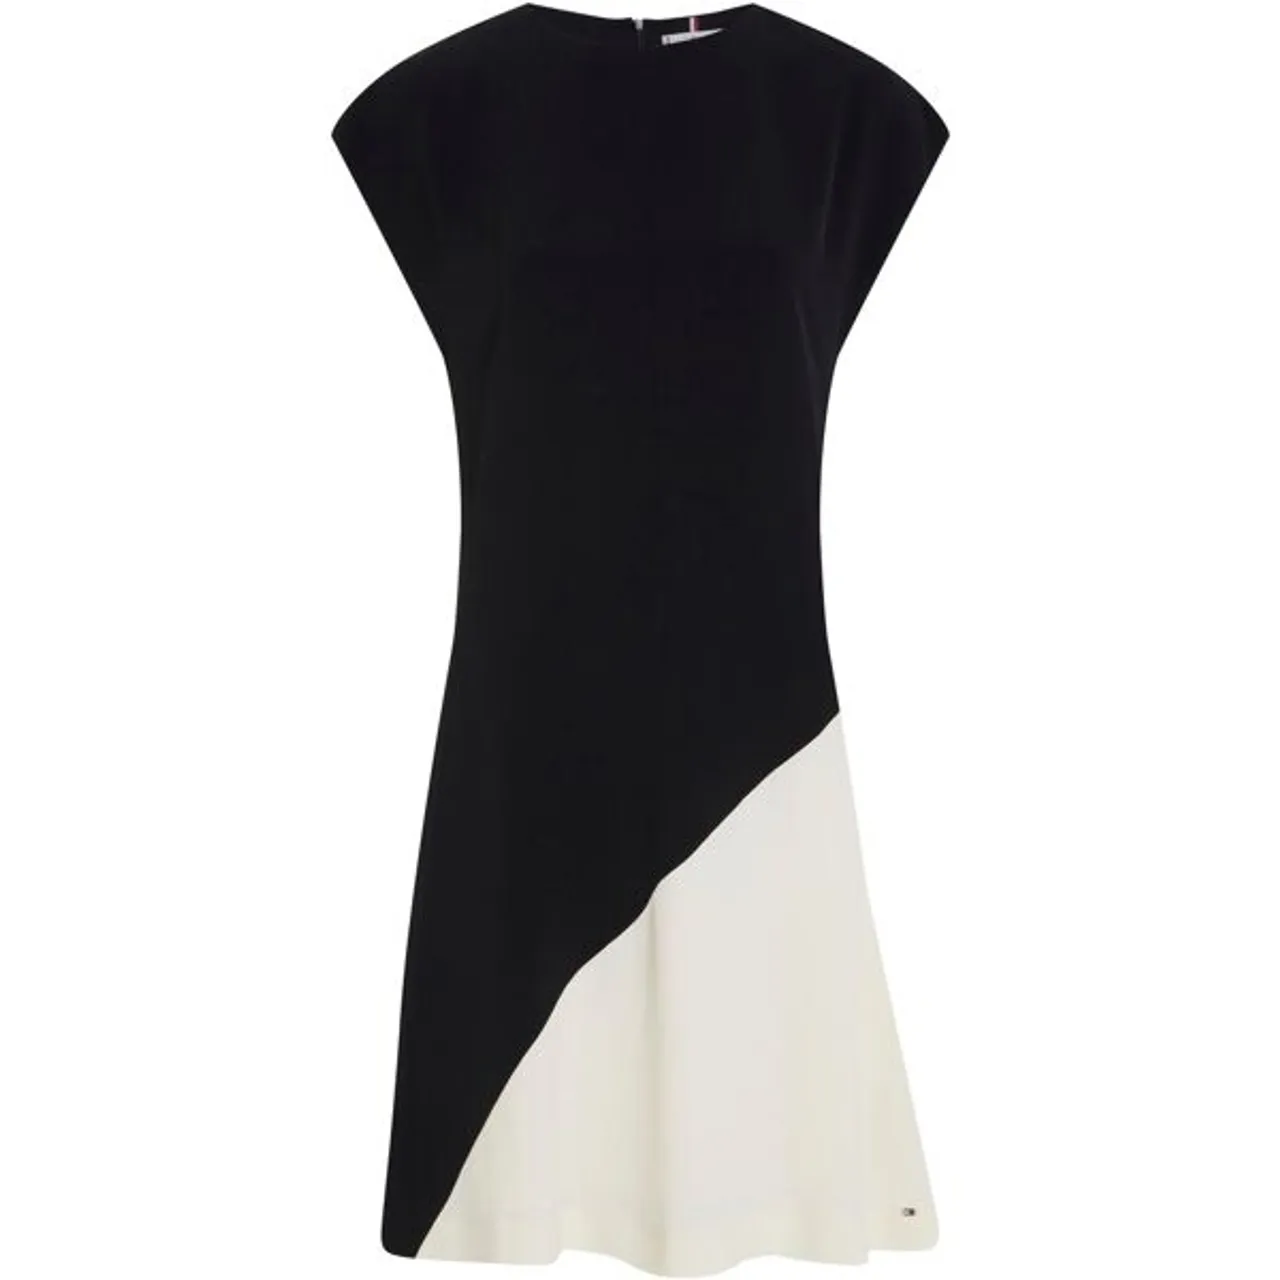 Blusenkleid TOMMY HILFIGER "VISCOSE BLOCKED KNEE DRESS" Gr. 38, N-Gr, schwarz (black, _calico_colorblocked) Damen Kleider Freizeitkleider